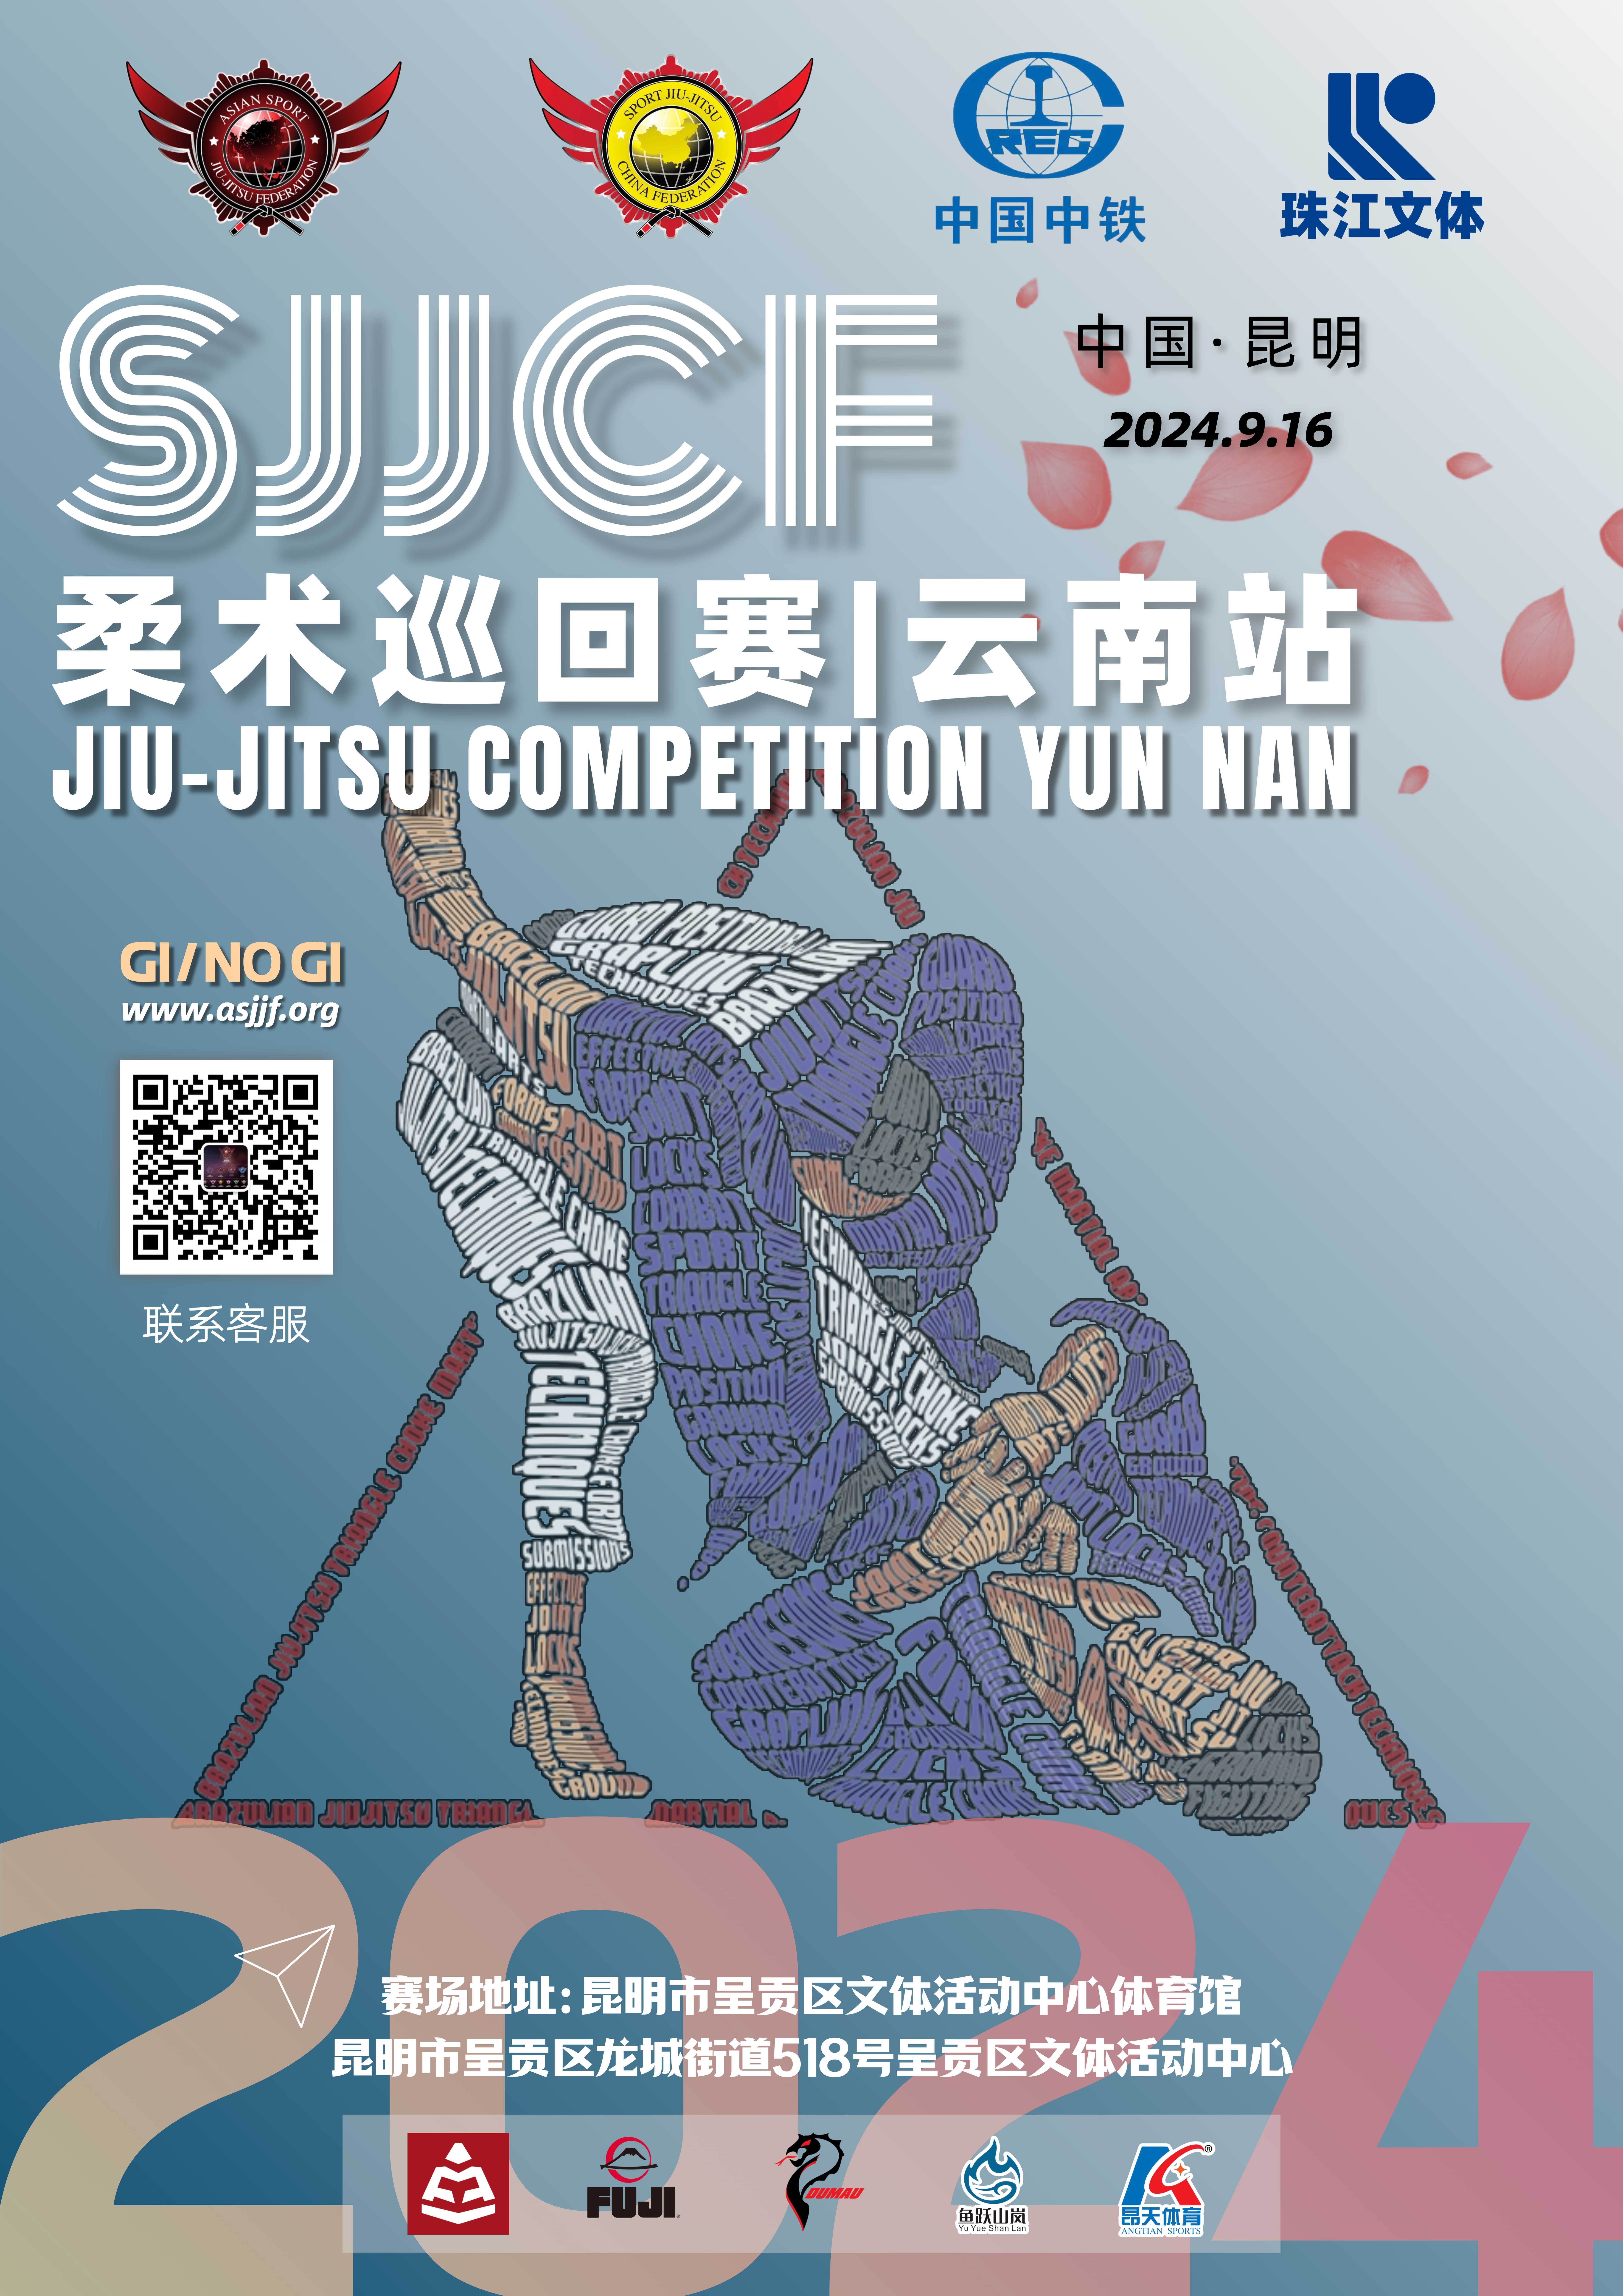 sjjcf yunnan no-gi championship 2024.(no-gi event)